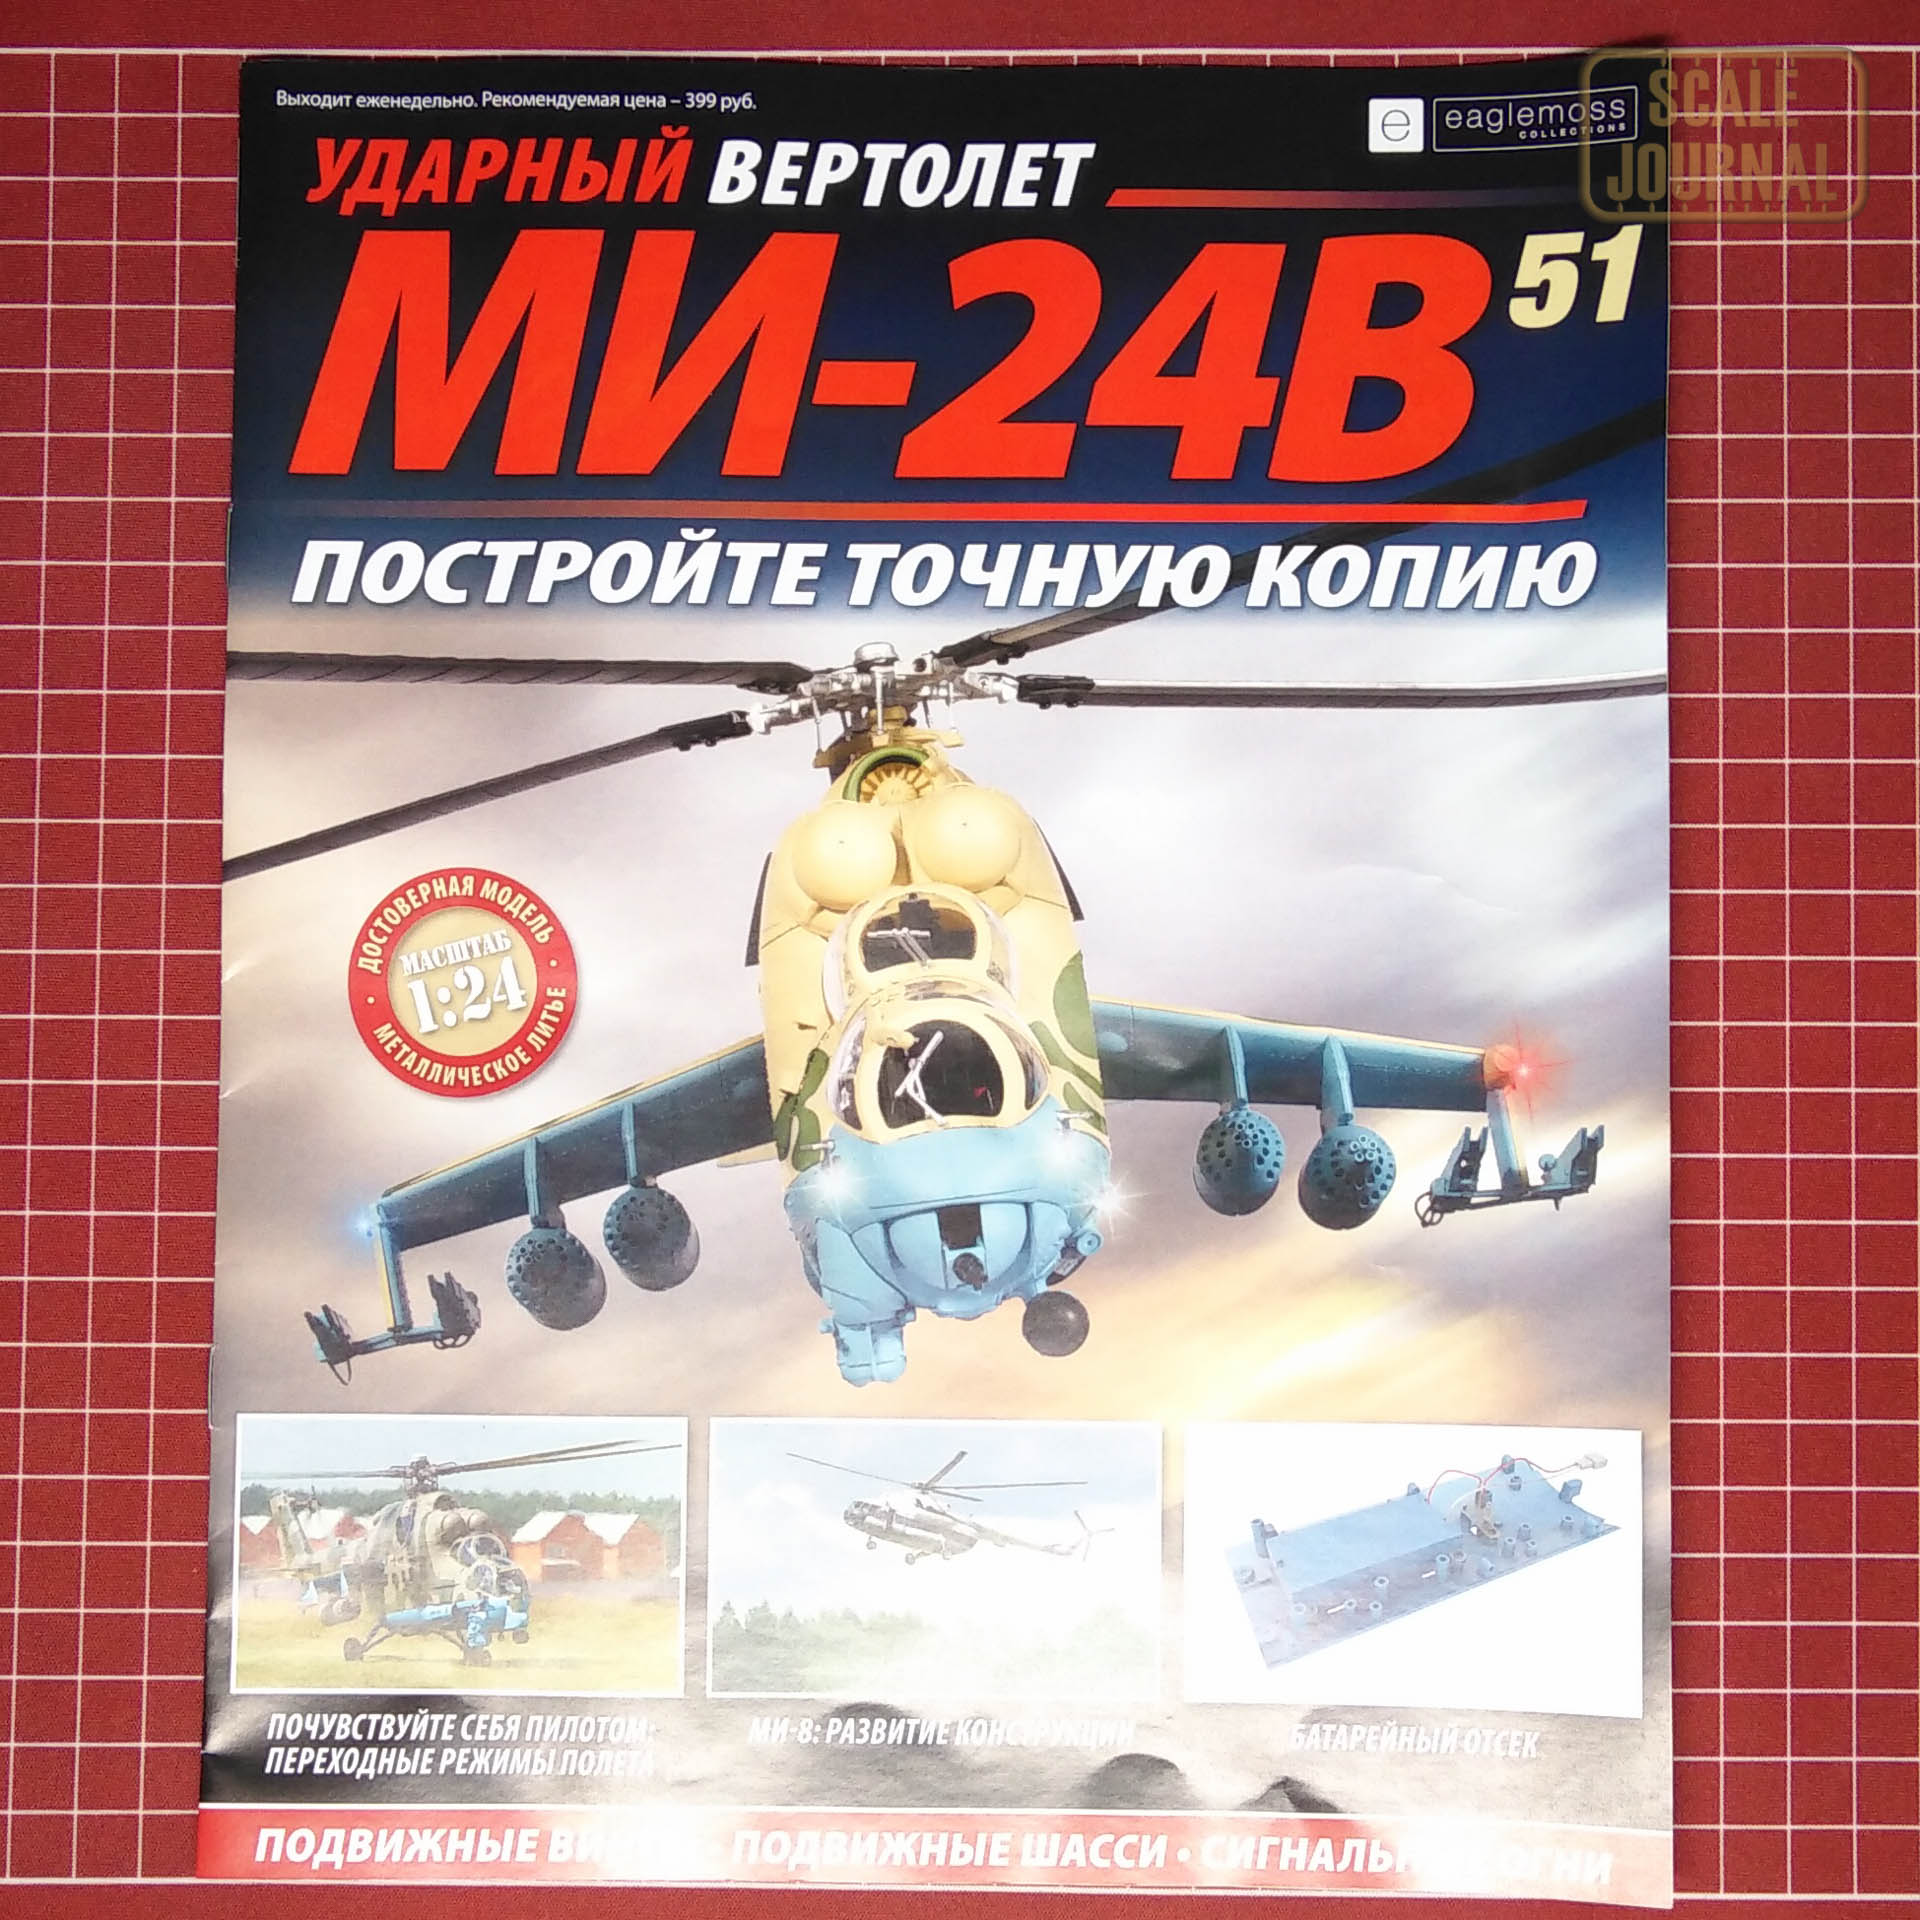 Ударный вертолет Ми-24В от Eaglemoss в масштабе 1/24